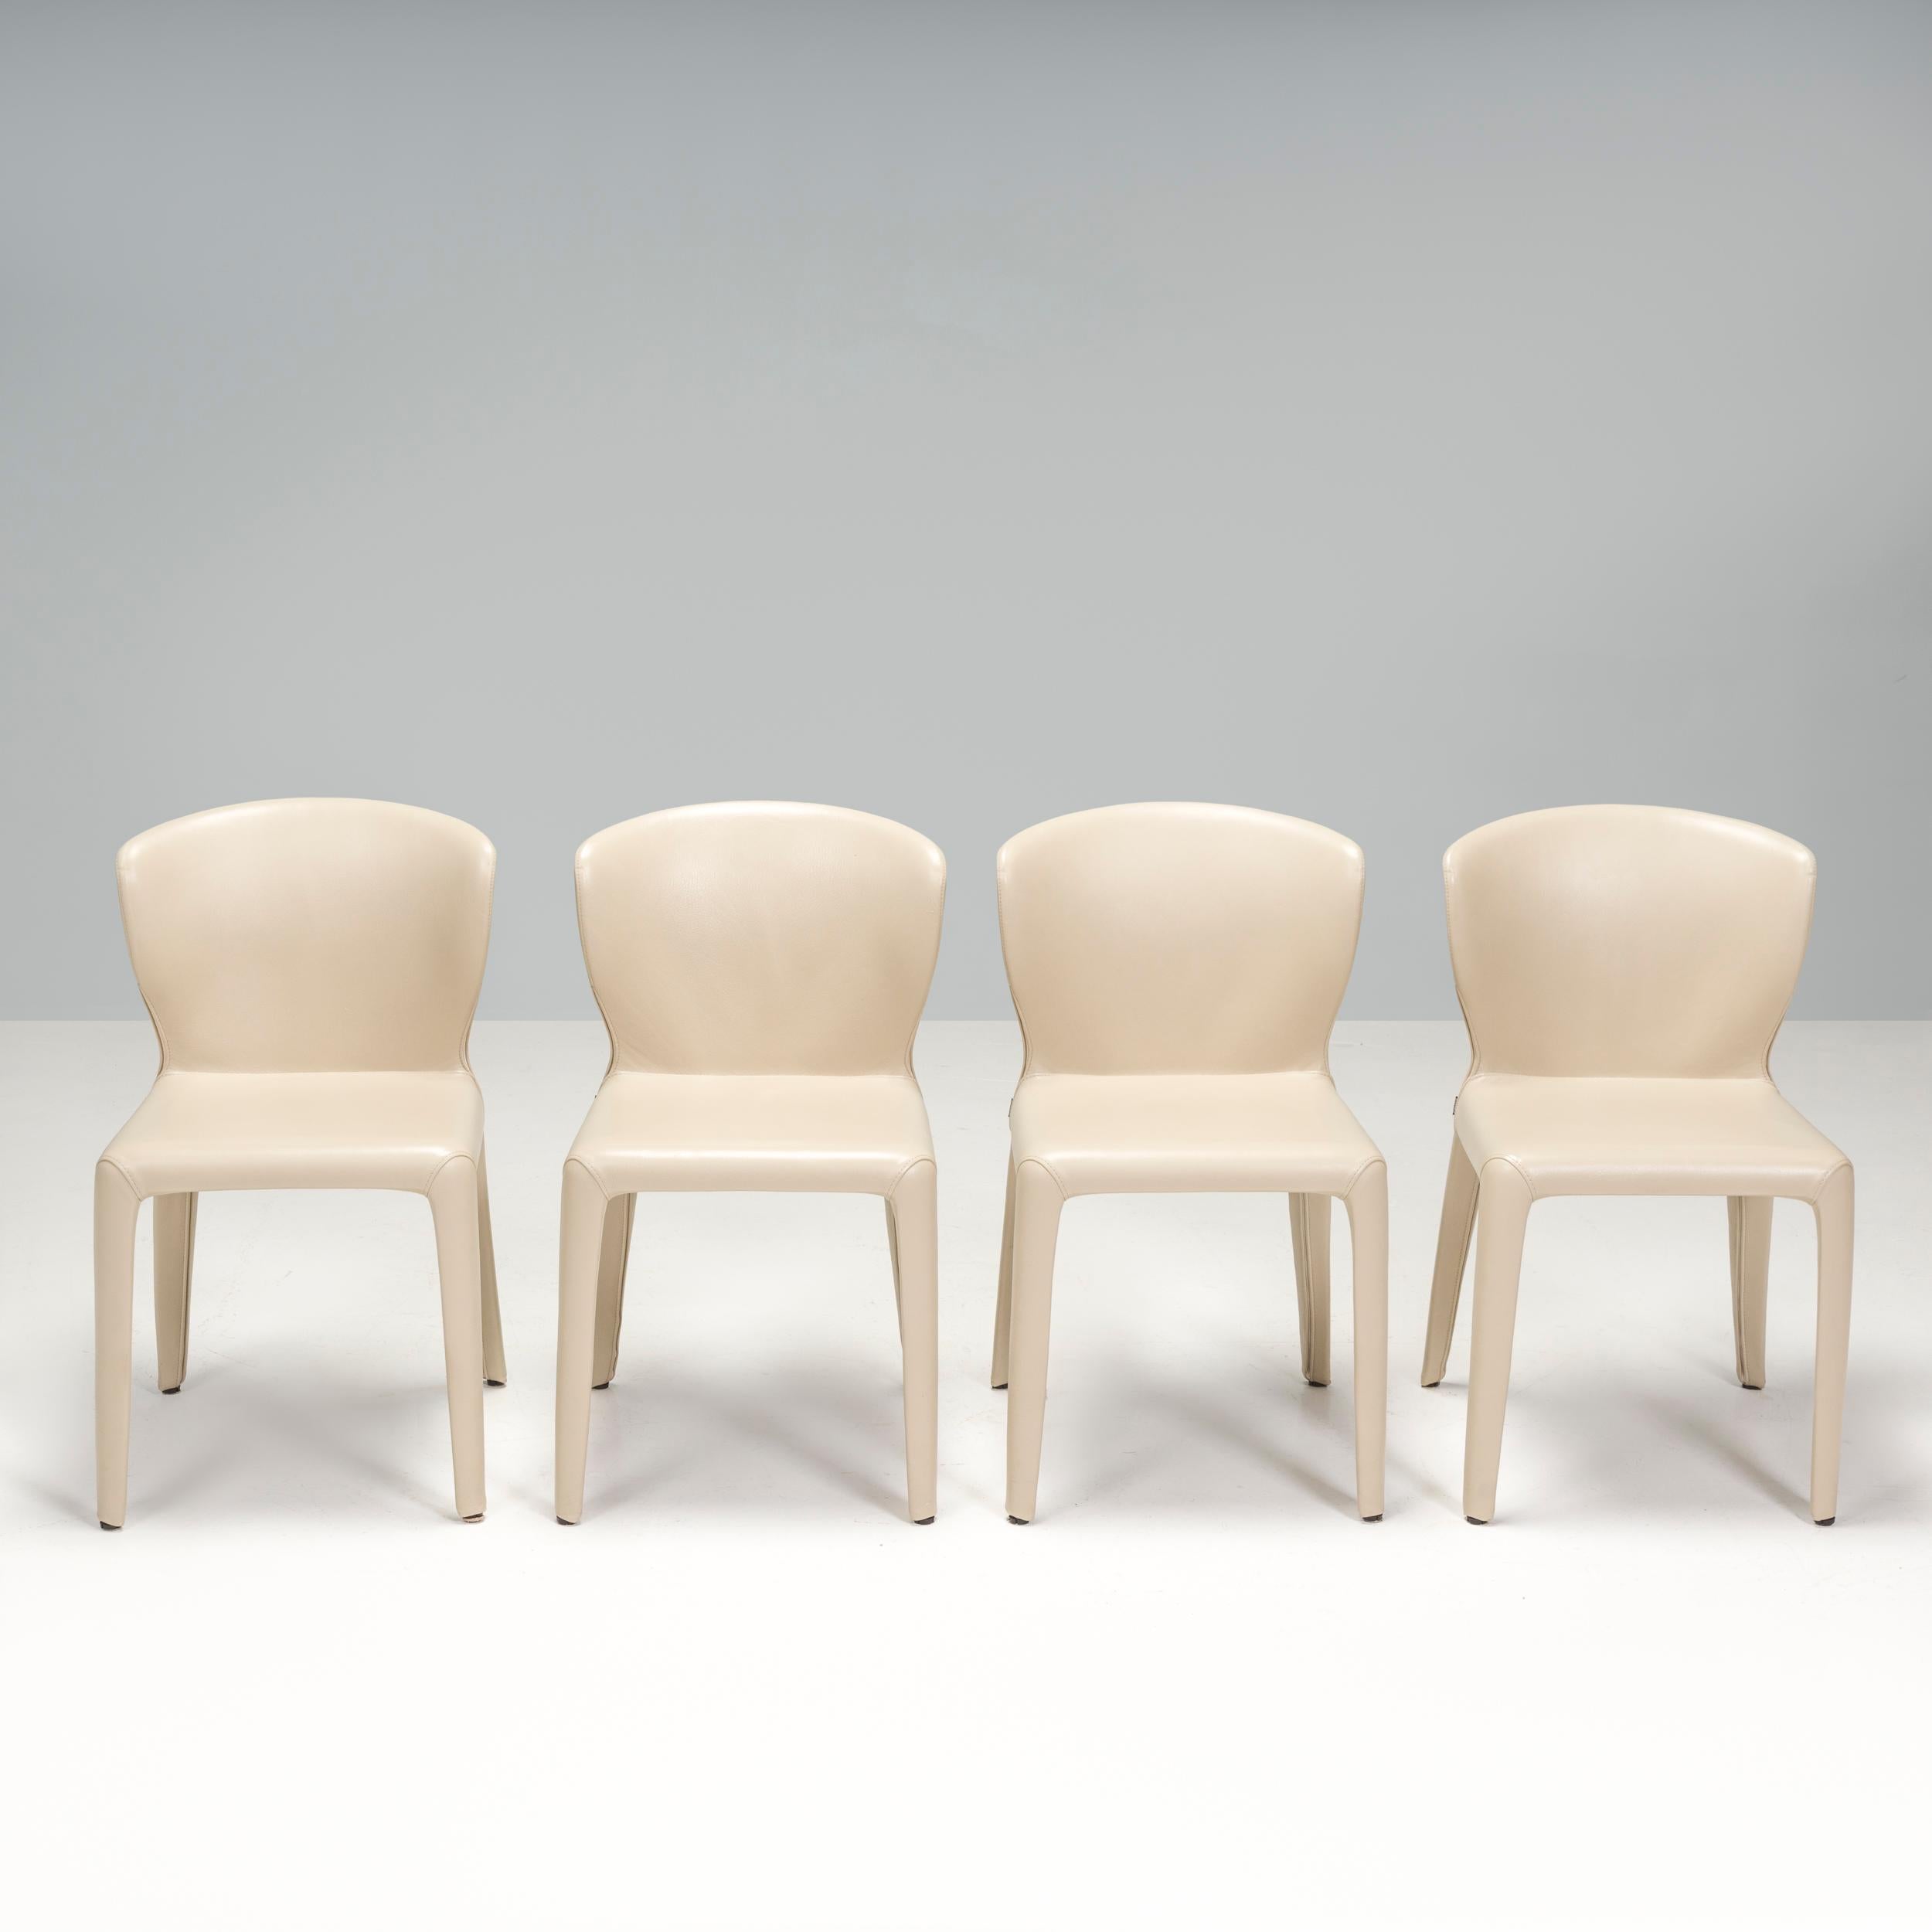 Conçues par Hannes Wettstein pour Cassina en 2003, ces chaises de salle à manger 367 Hanne présentent une silhouette épurée et contemporaine.
 
L'ensemble de quatre chaises est en excellent état et est entièrement recouvert de cuir crème.
 
Dotées